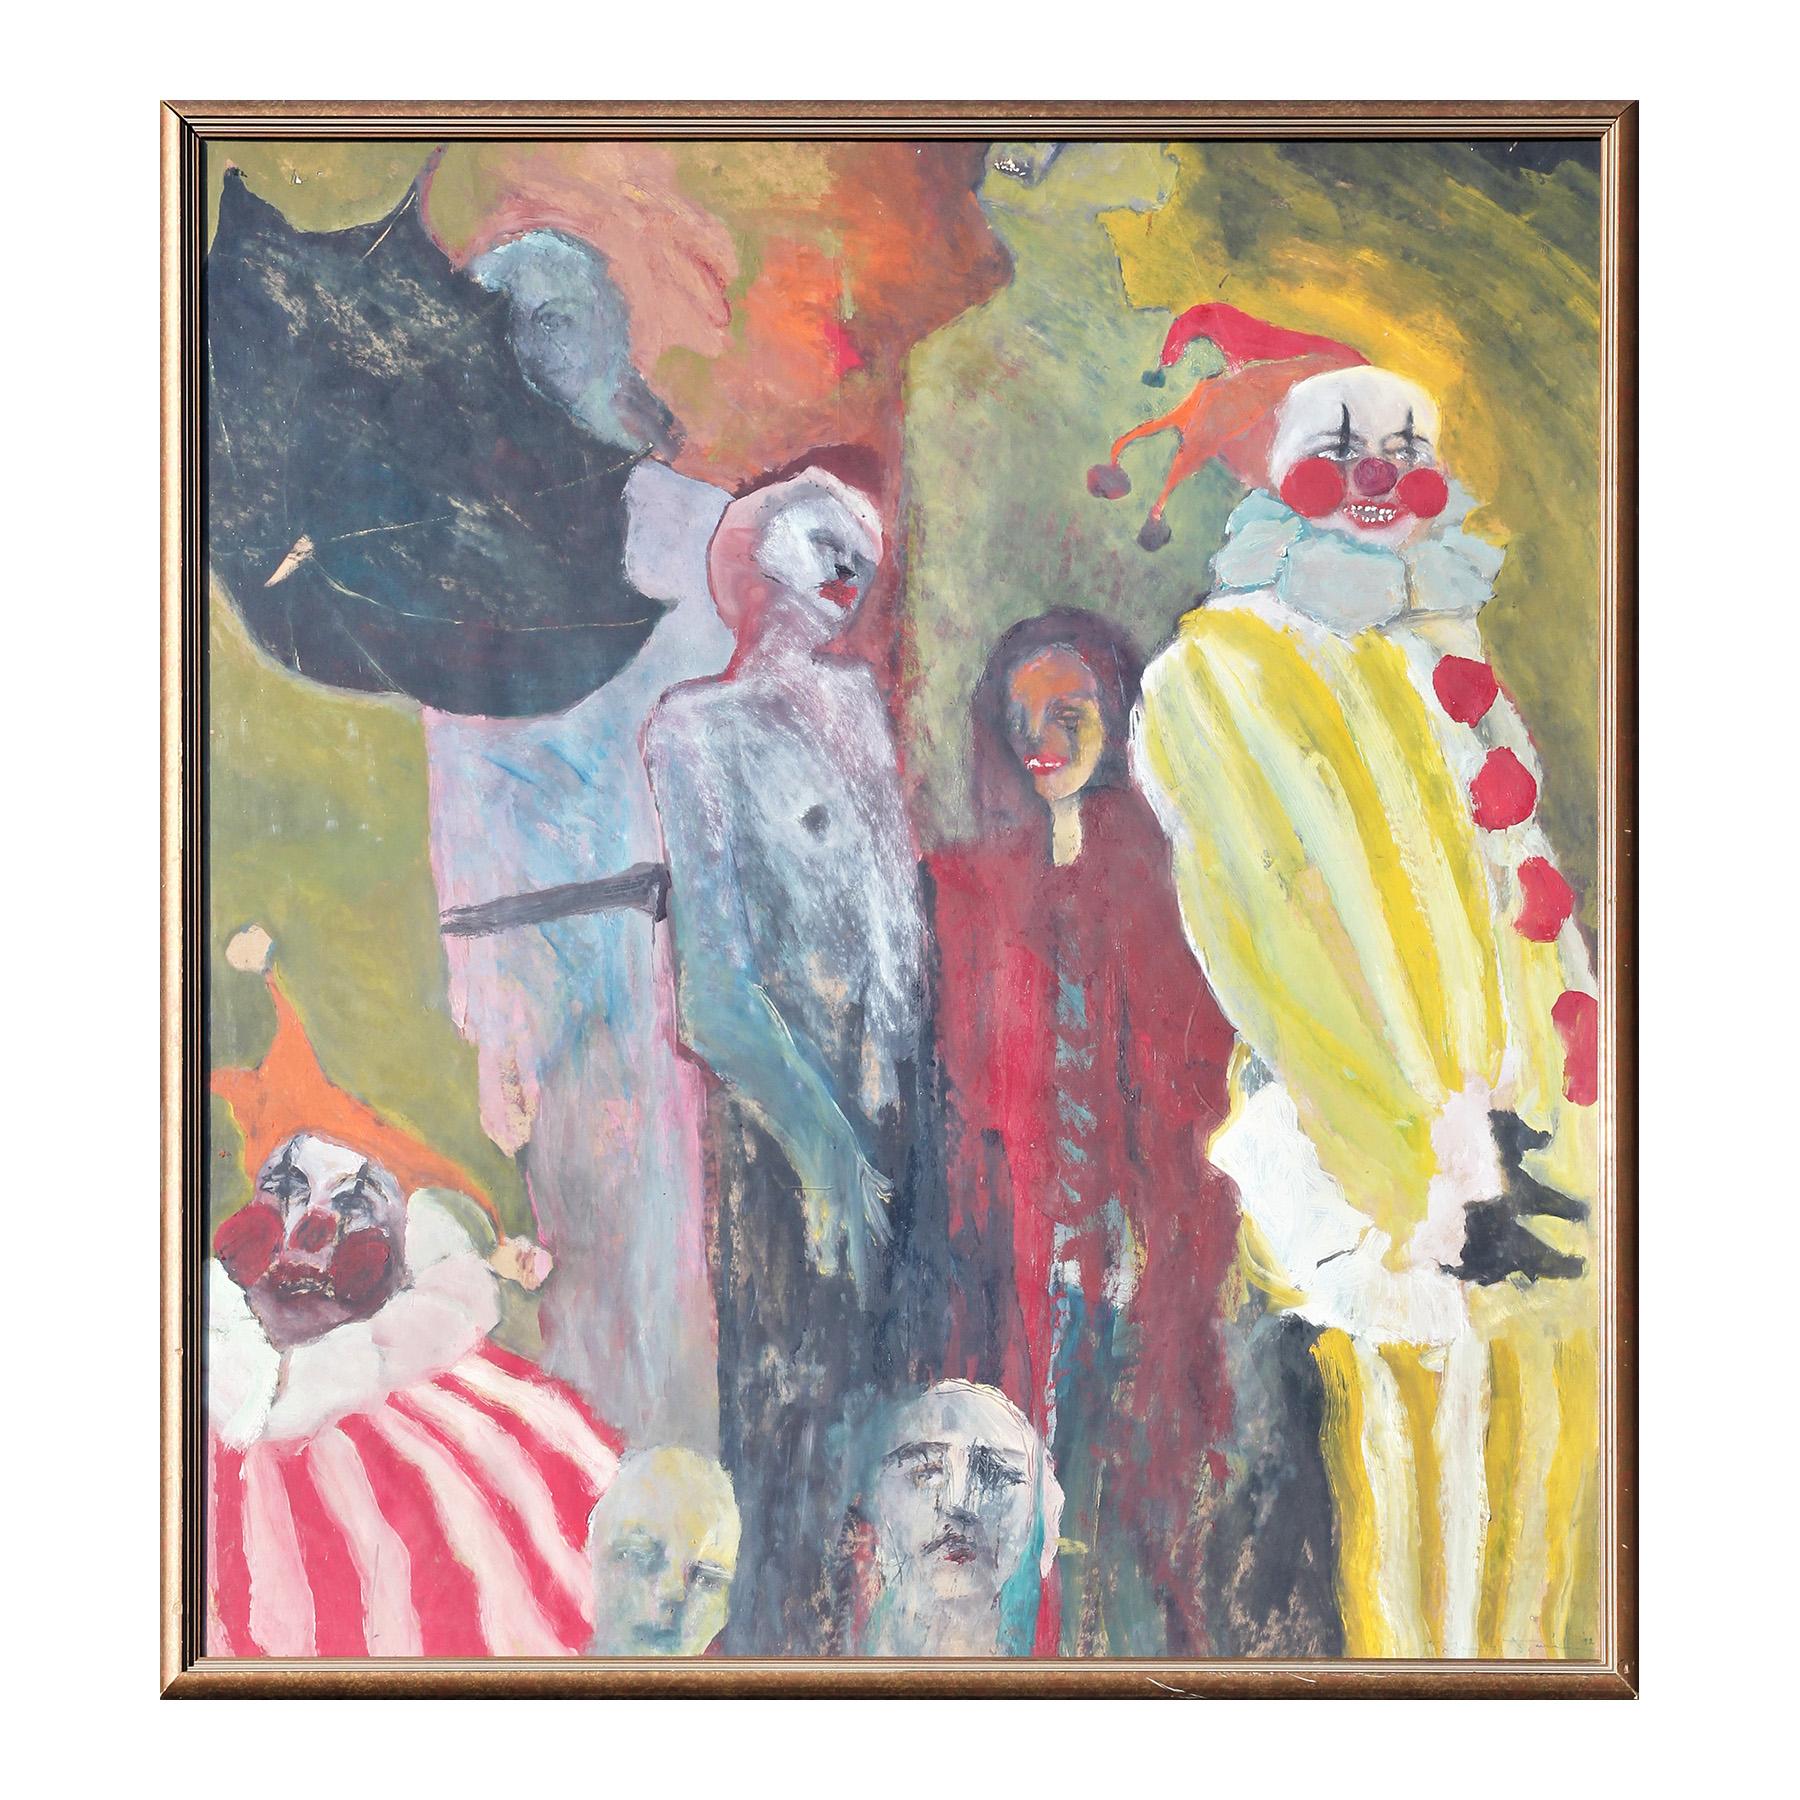 Peinture expressionniste abstraite colorée surréaliste et surréaliste d'un groupe de clowns de Macabre - Painting de Unknown